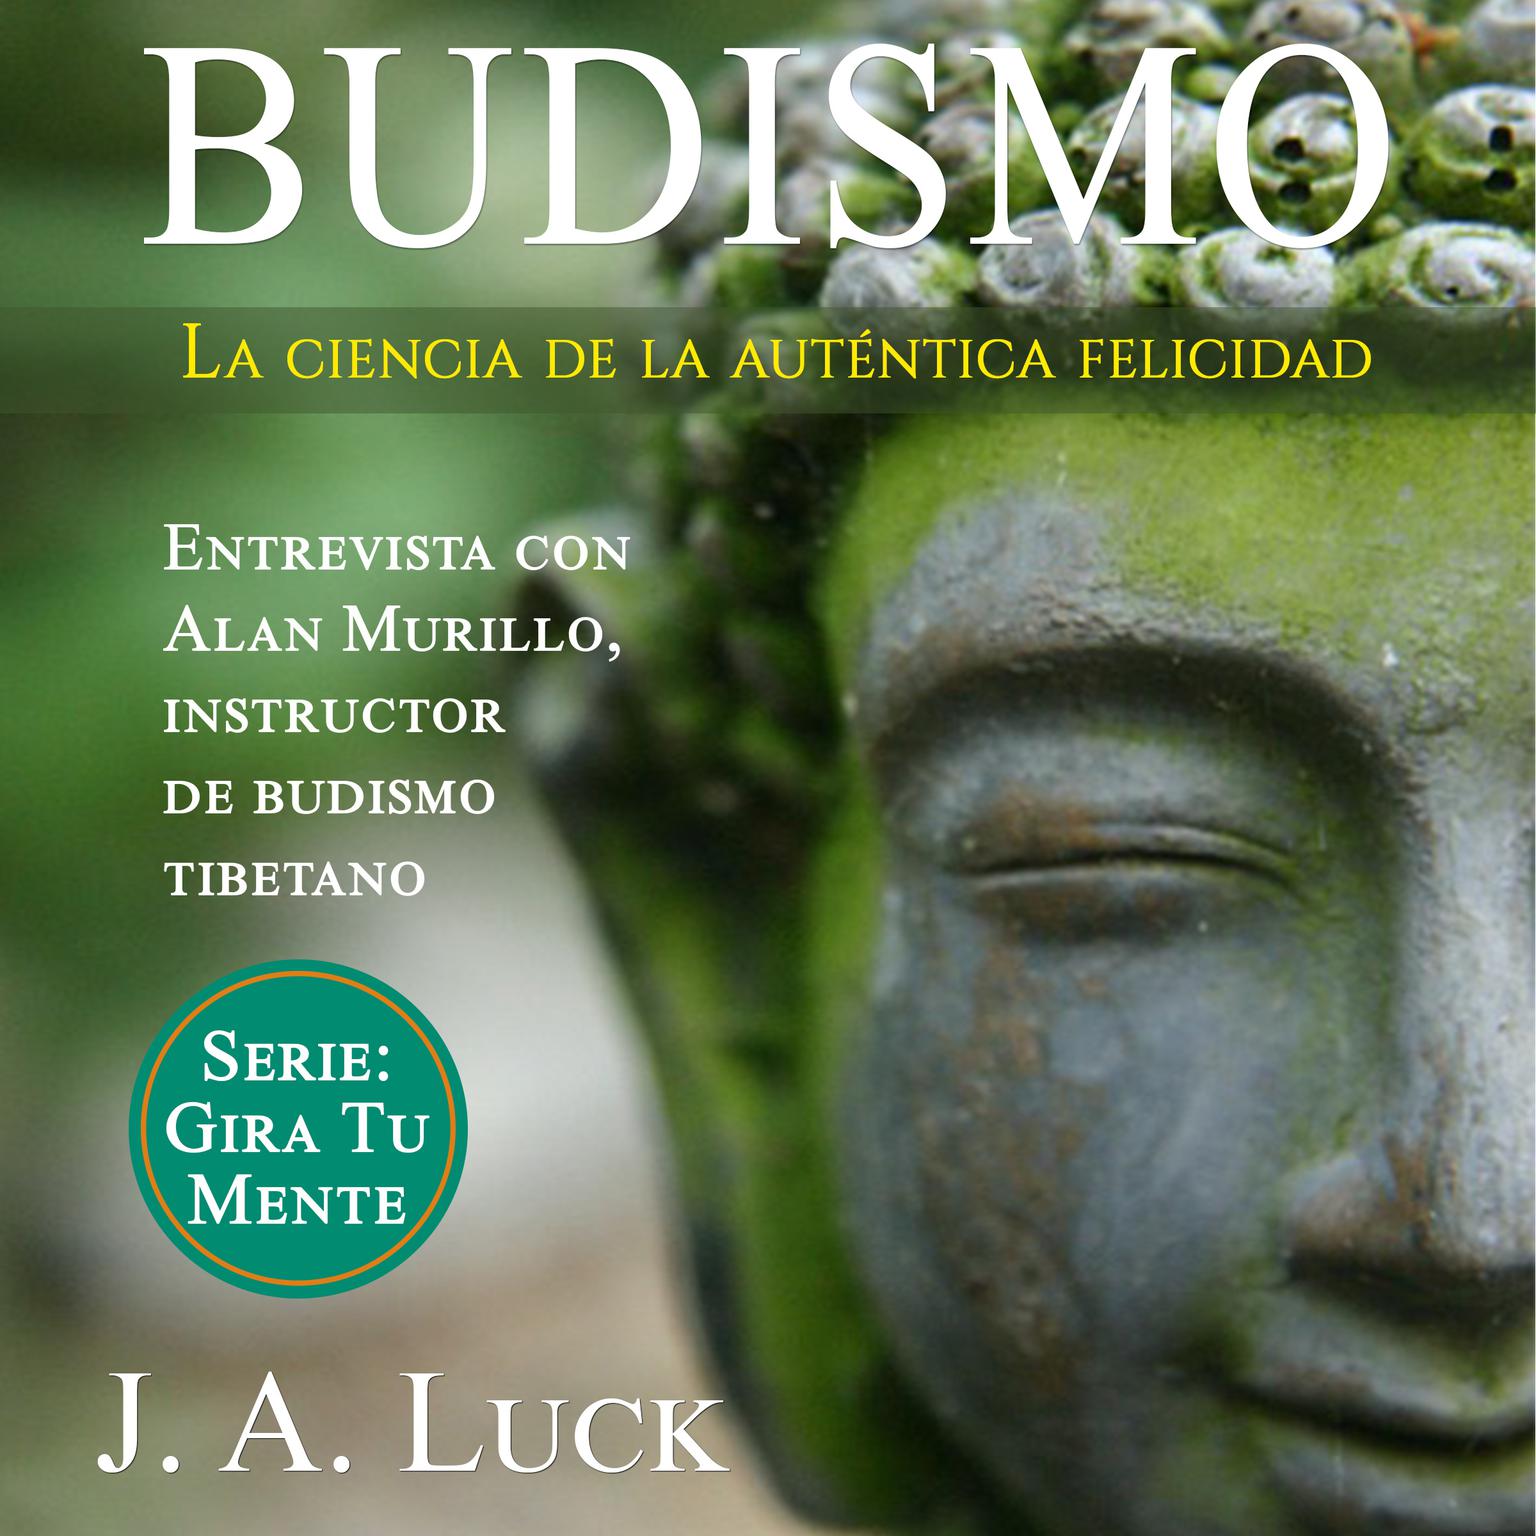 Budismo: la ciencia de la auténtica felicidad Audiobook, by J. A. Luck